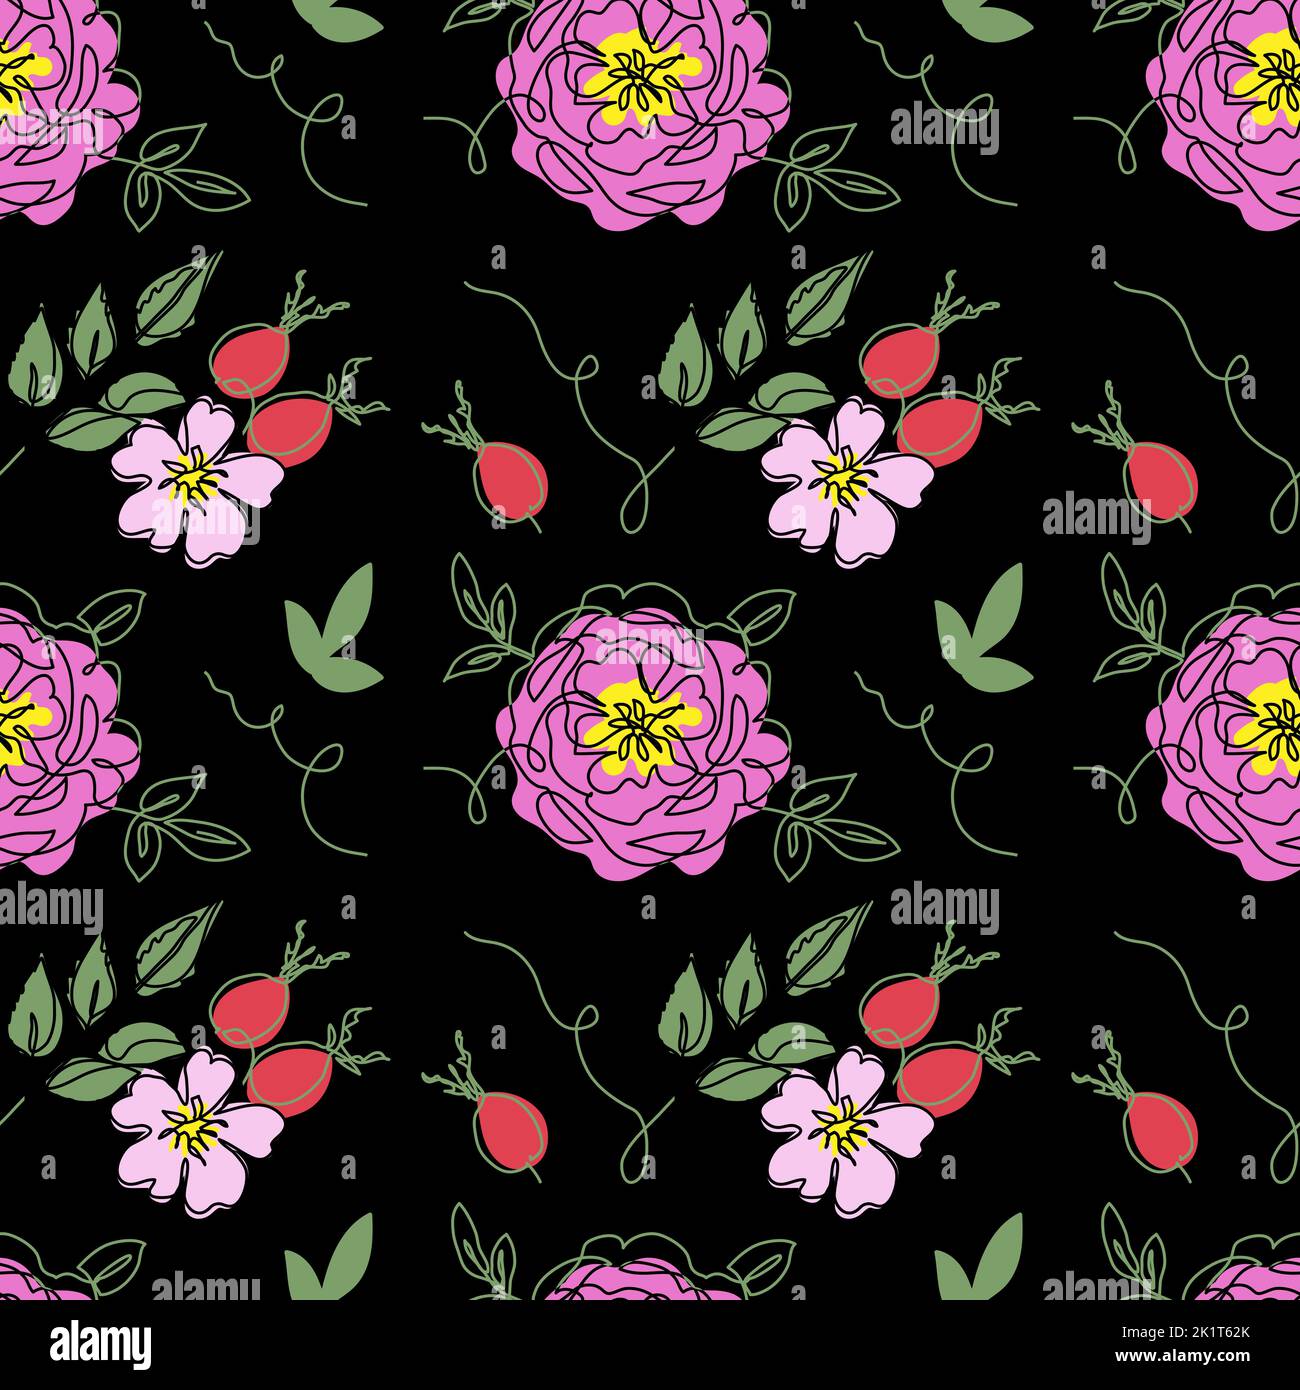 Rose chien, rosehip, briar, rosa canina, rose sauvage vecteur sans couture motif sur fond noir. Un dessin continu de fleurs et de baies Illustration de Vecteur